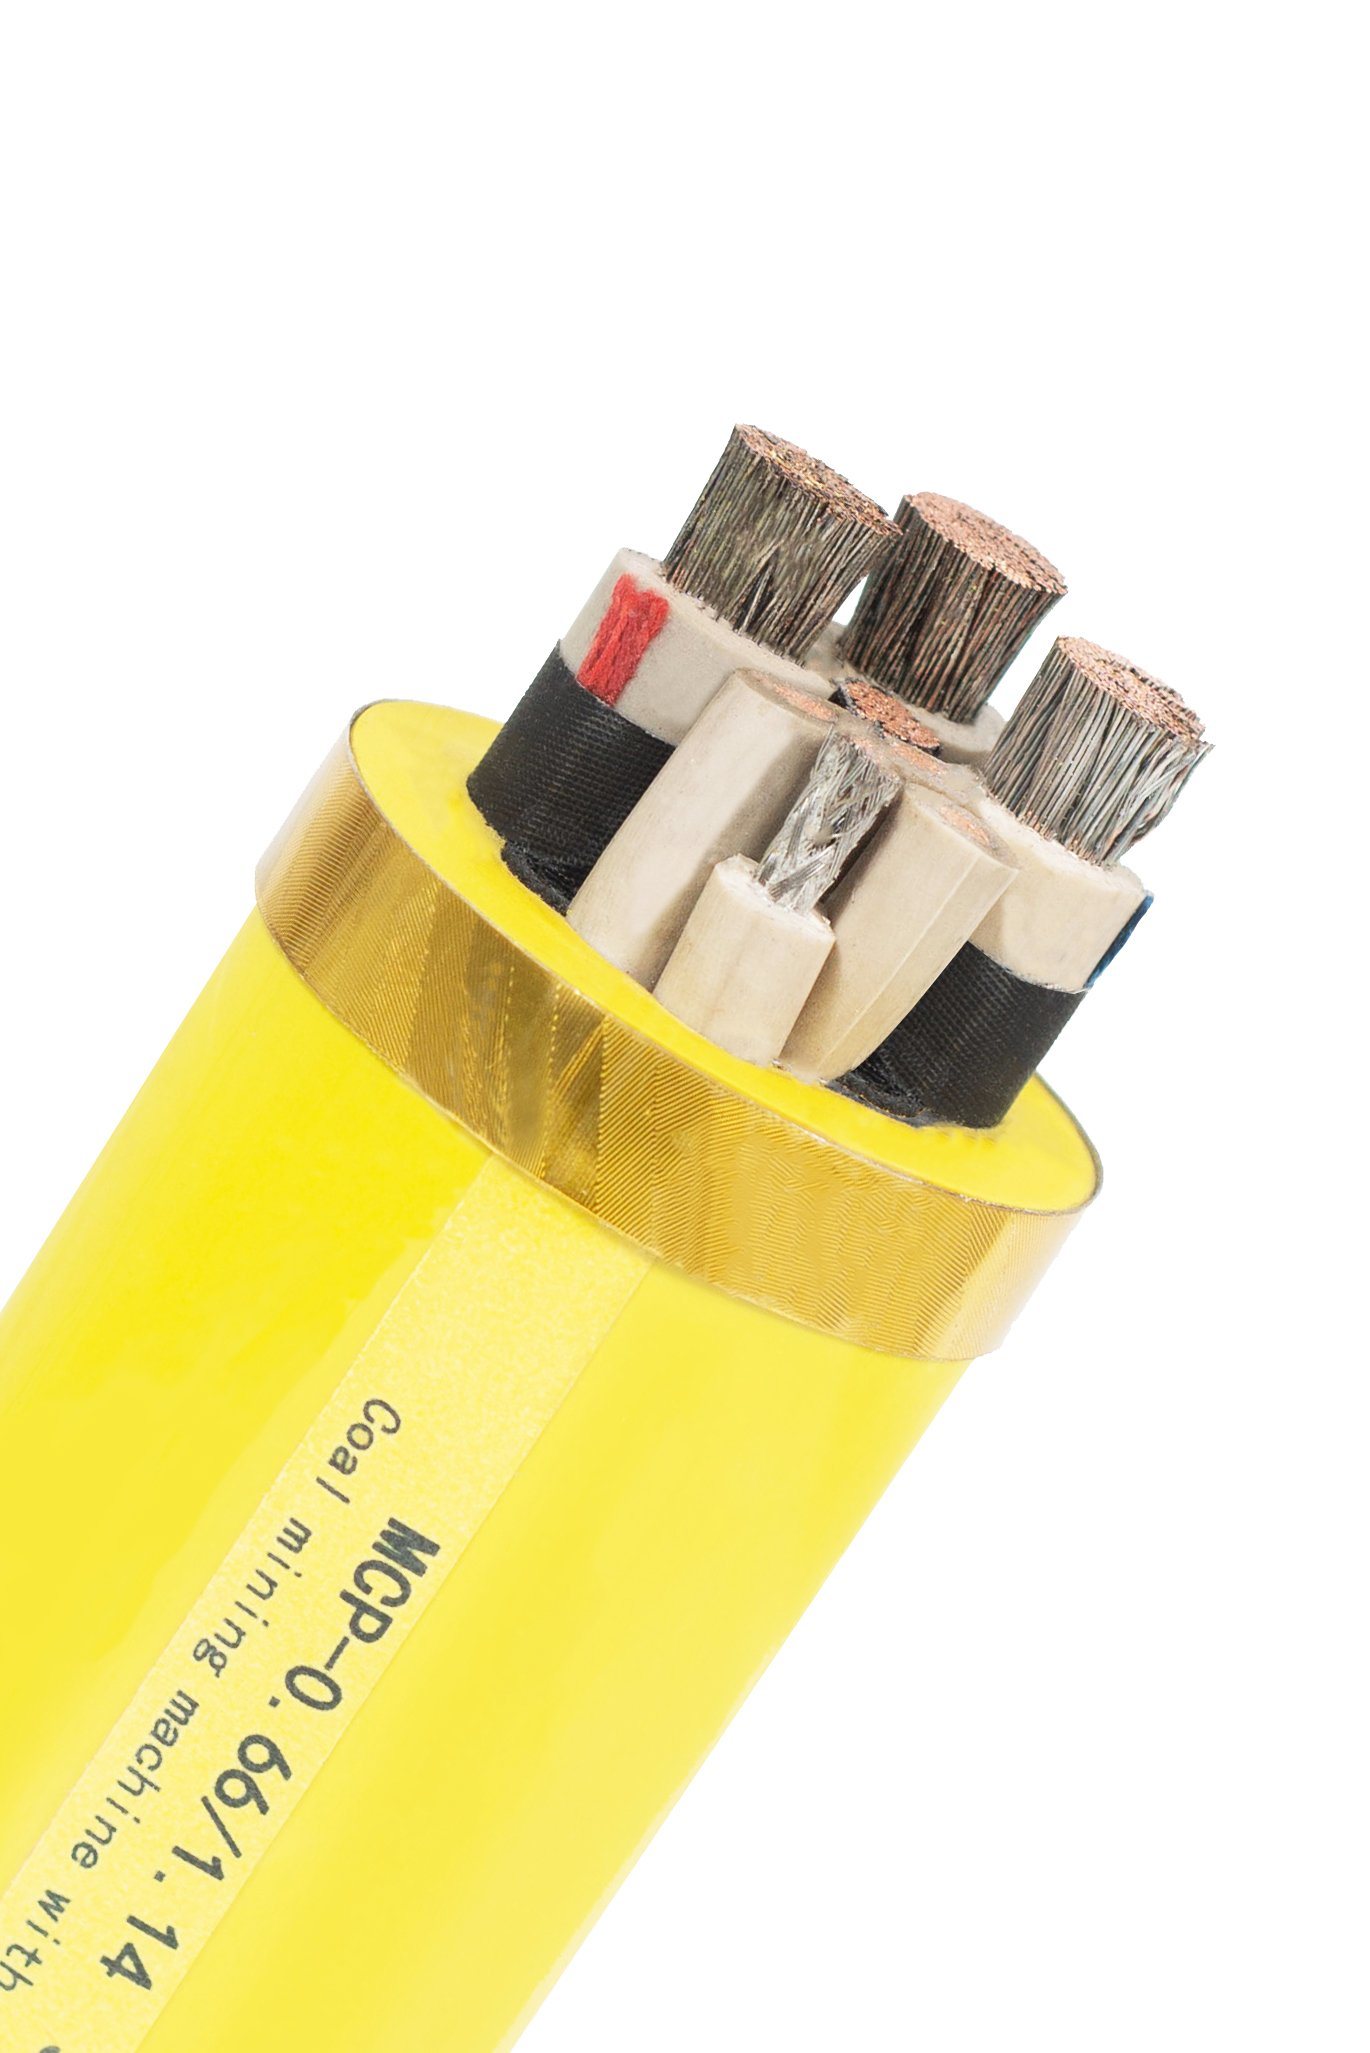 
                XLPE Негорючий резиновые дна электрический кабель питания оптовые цены H07rn-F ПВХ меди изолированный гибкий добыча полезных ископаемых
            